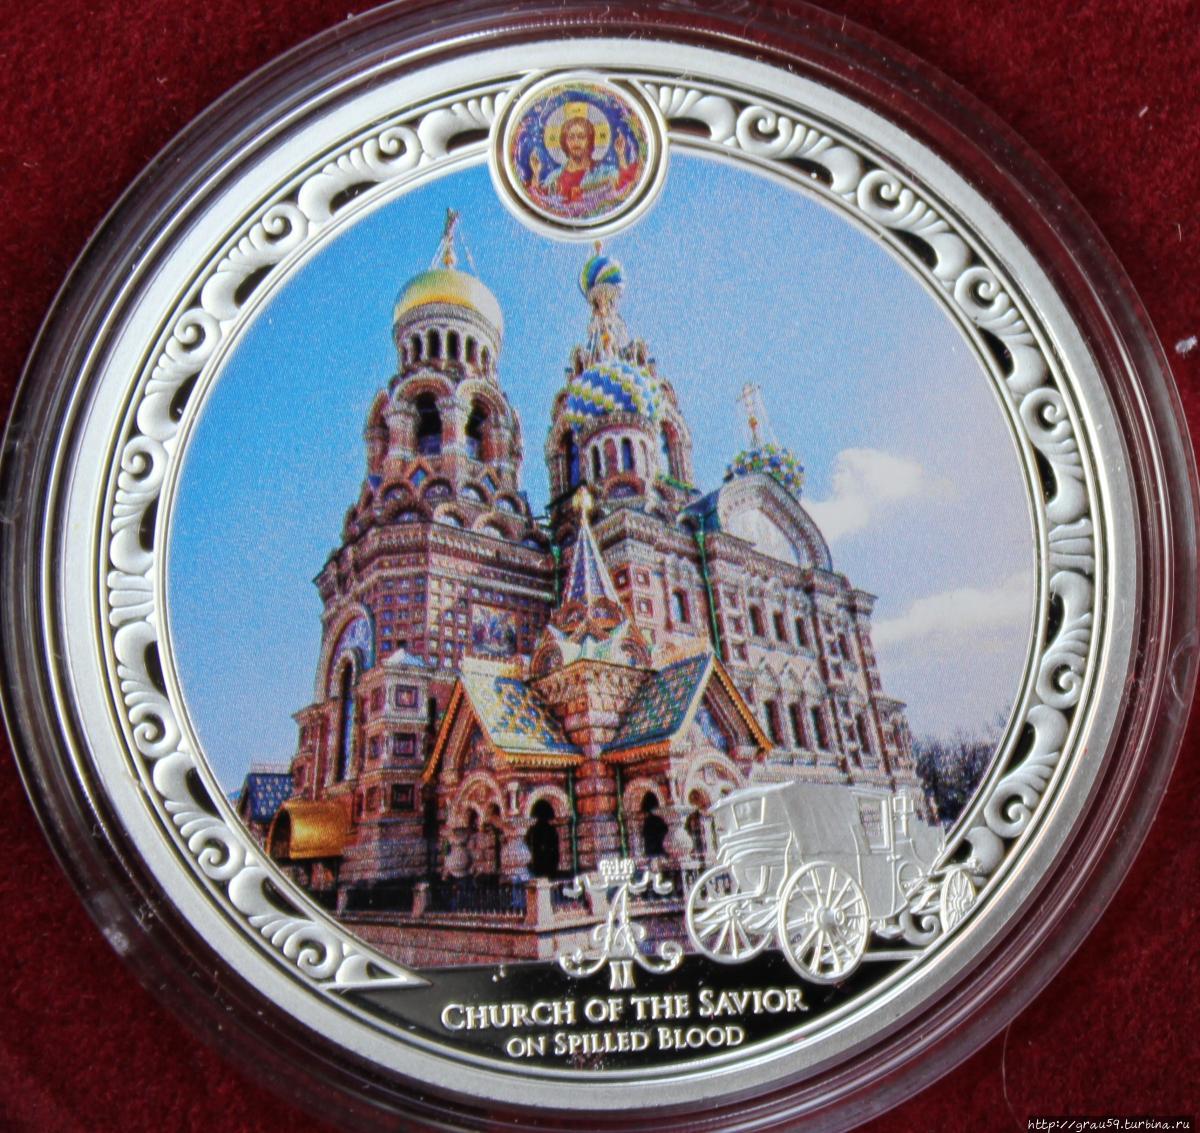 Россия на монетах других стран. Три российских императора